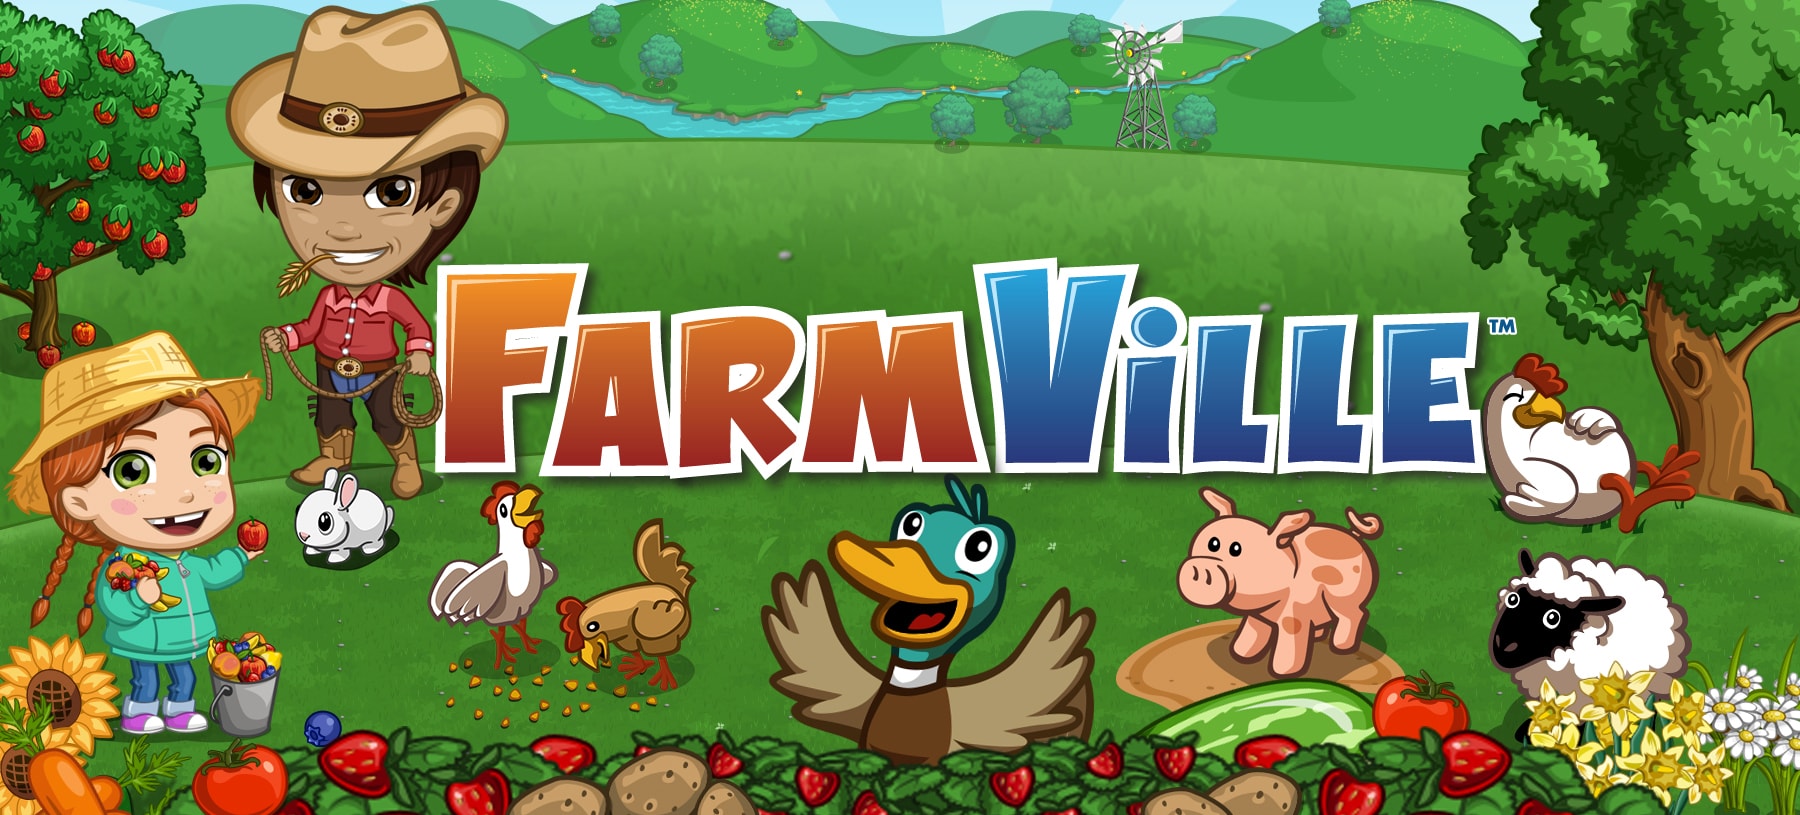 Farmville-logo